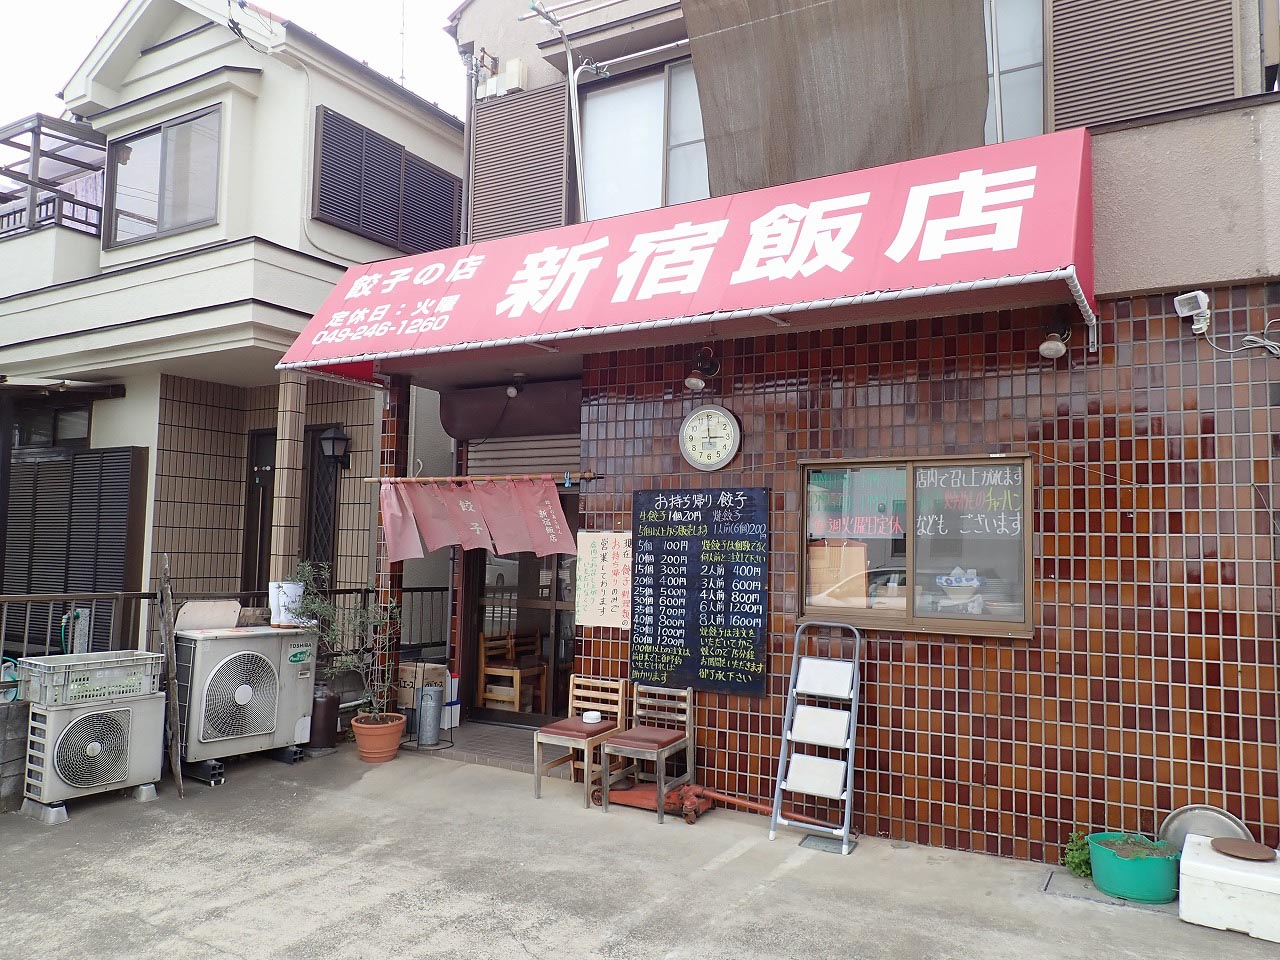 1個20円と超リーズナブルな餃子の店『新宿飯店』